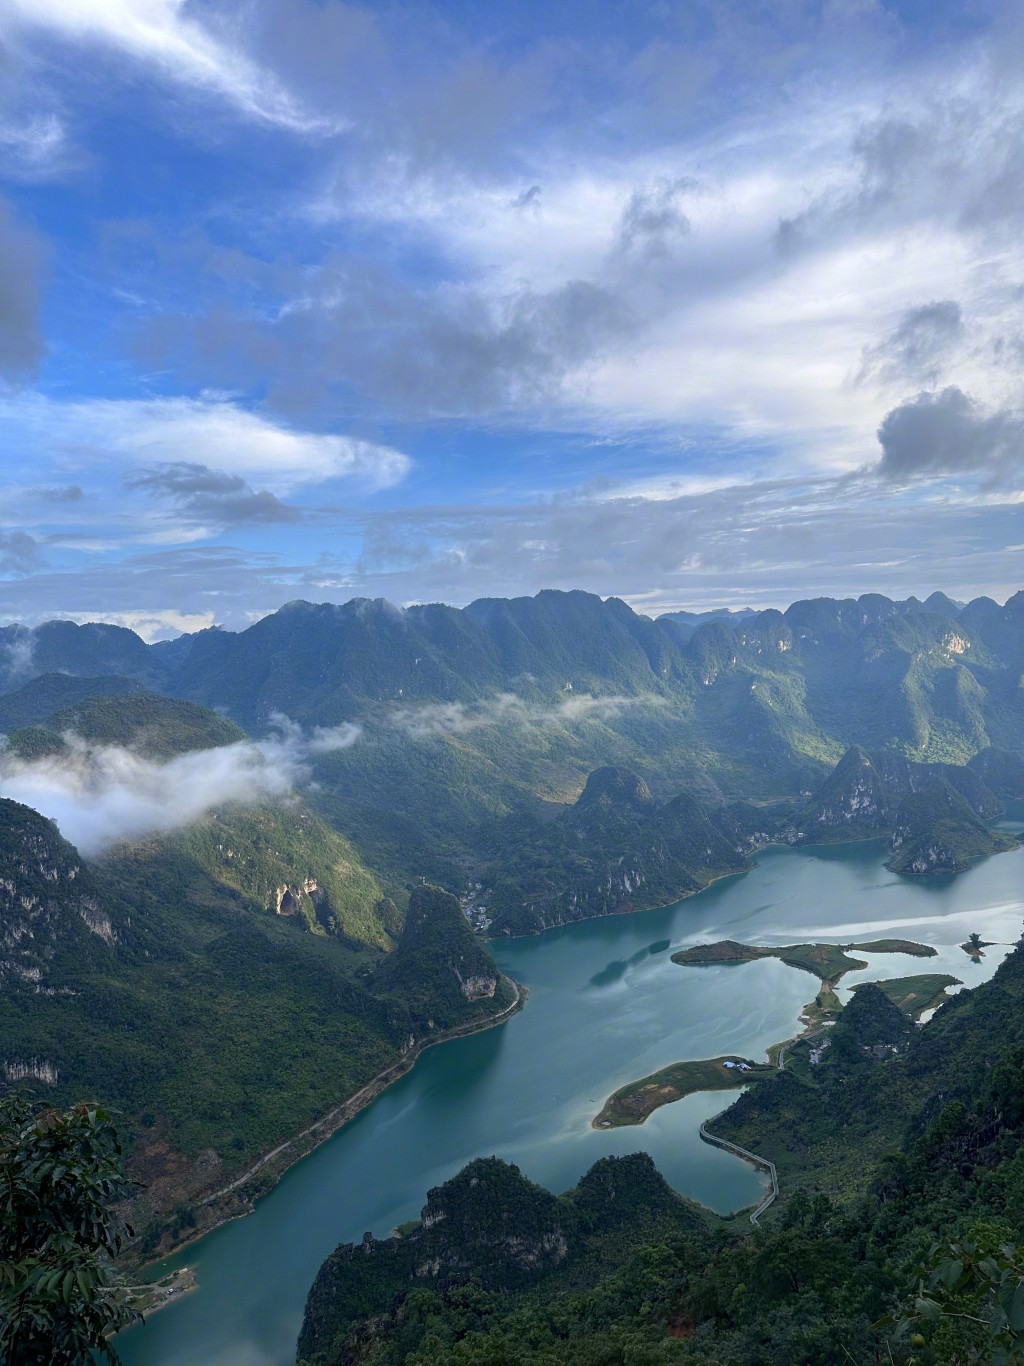 張馨予在廣西浩坤湖行山打卡。微博